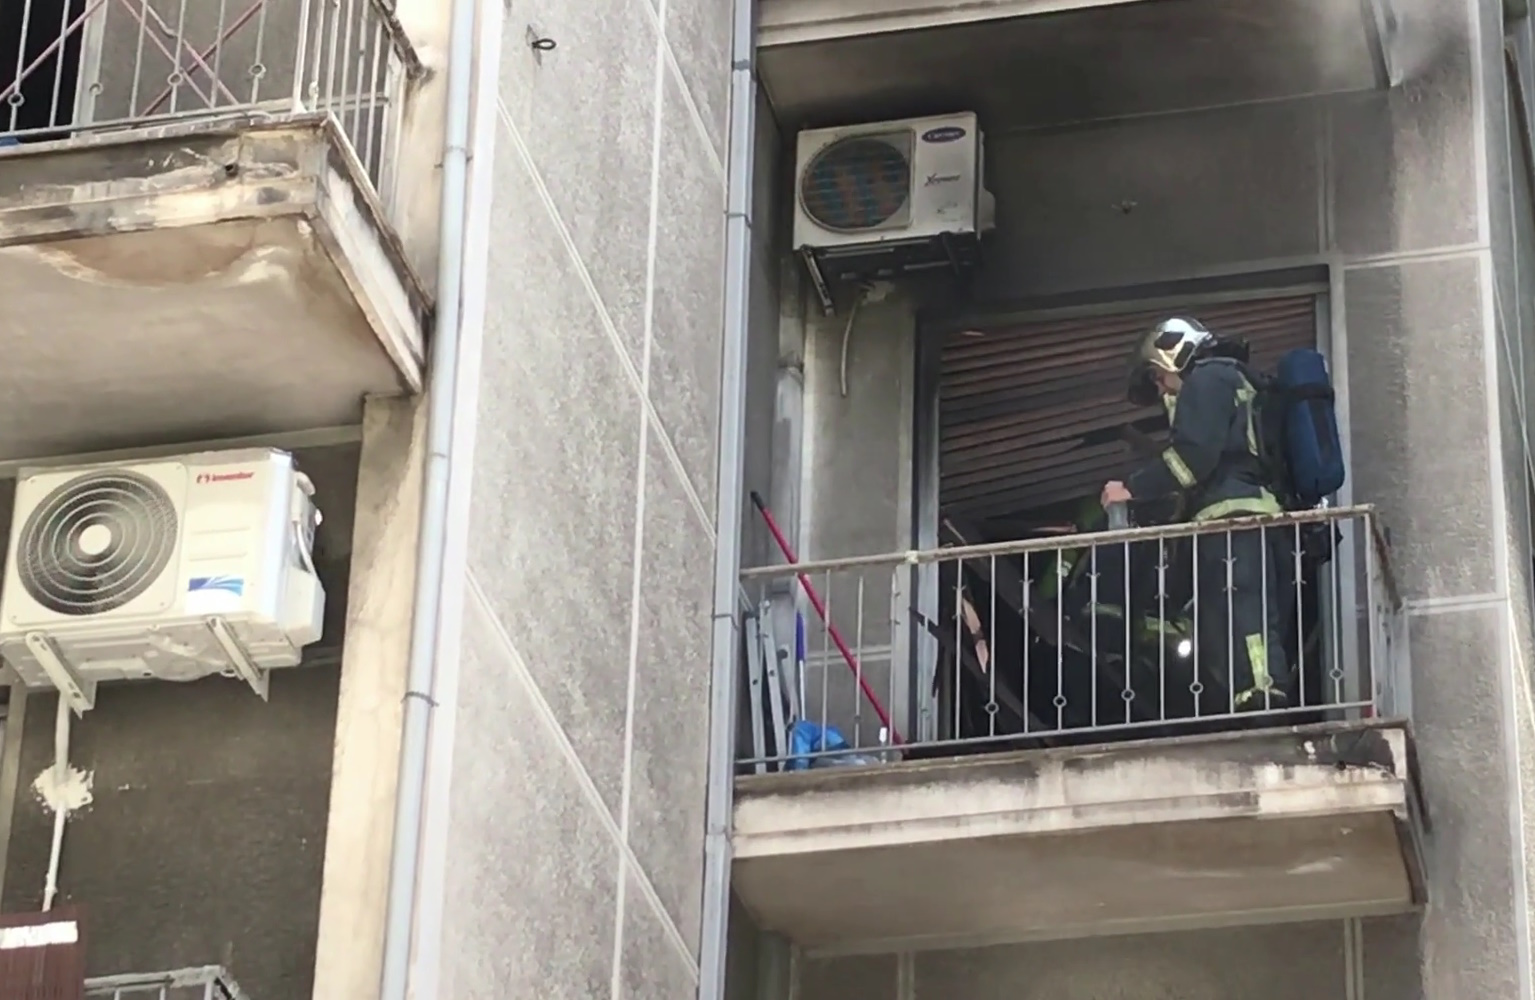 Εξάρχεια: Φωτιά σε διαμέρισμα που προκλήθηκε από ξεχασμένο μαγειρικό σκεύος